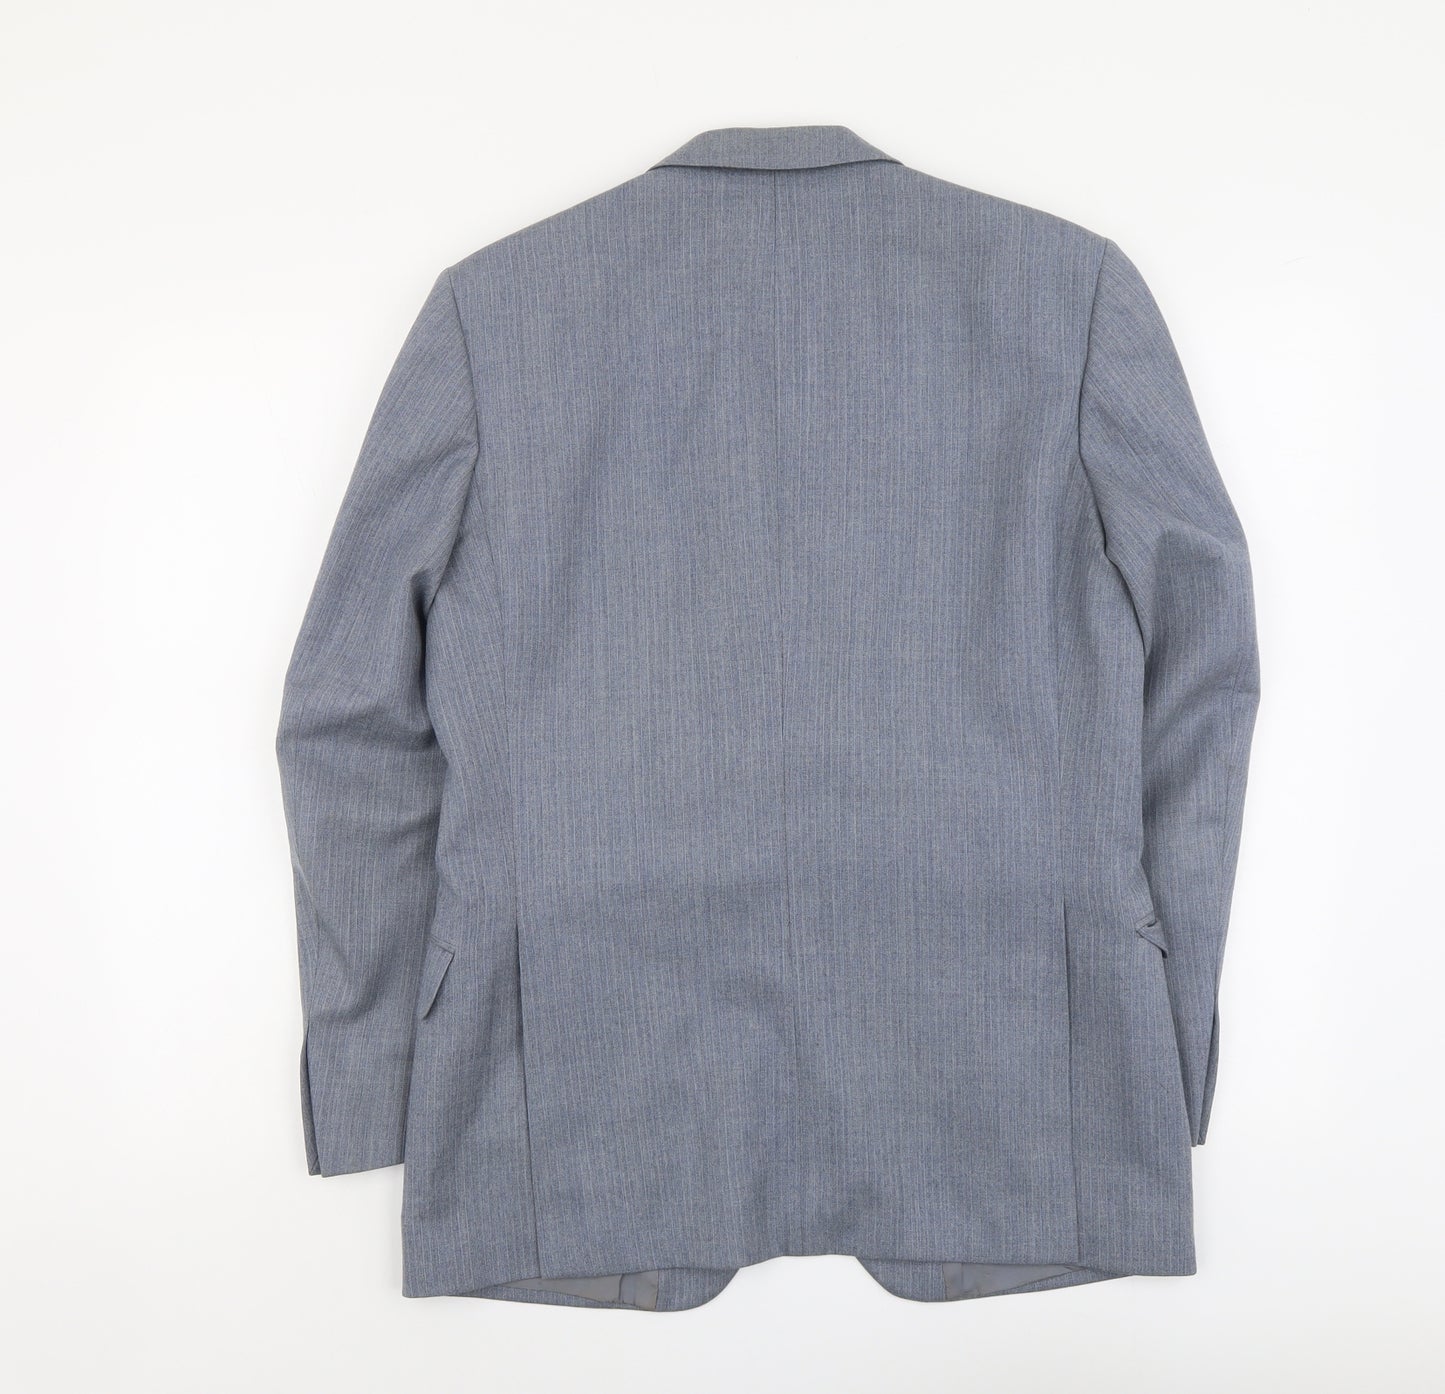 Marks and Spencer Mens Blue Striped Viscose Jacket Suit Jacket Size 38 Regular